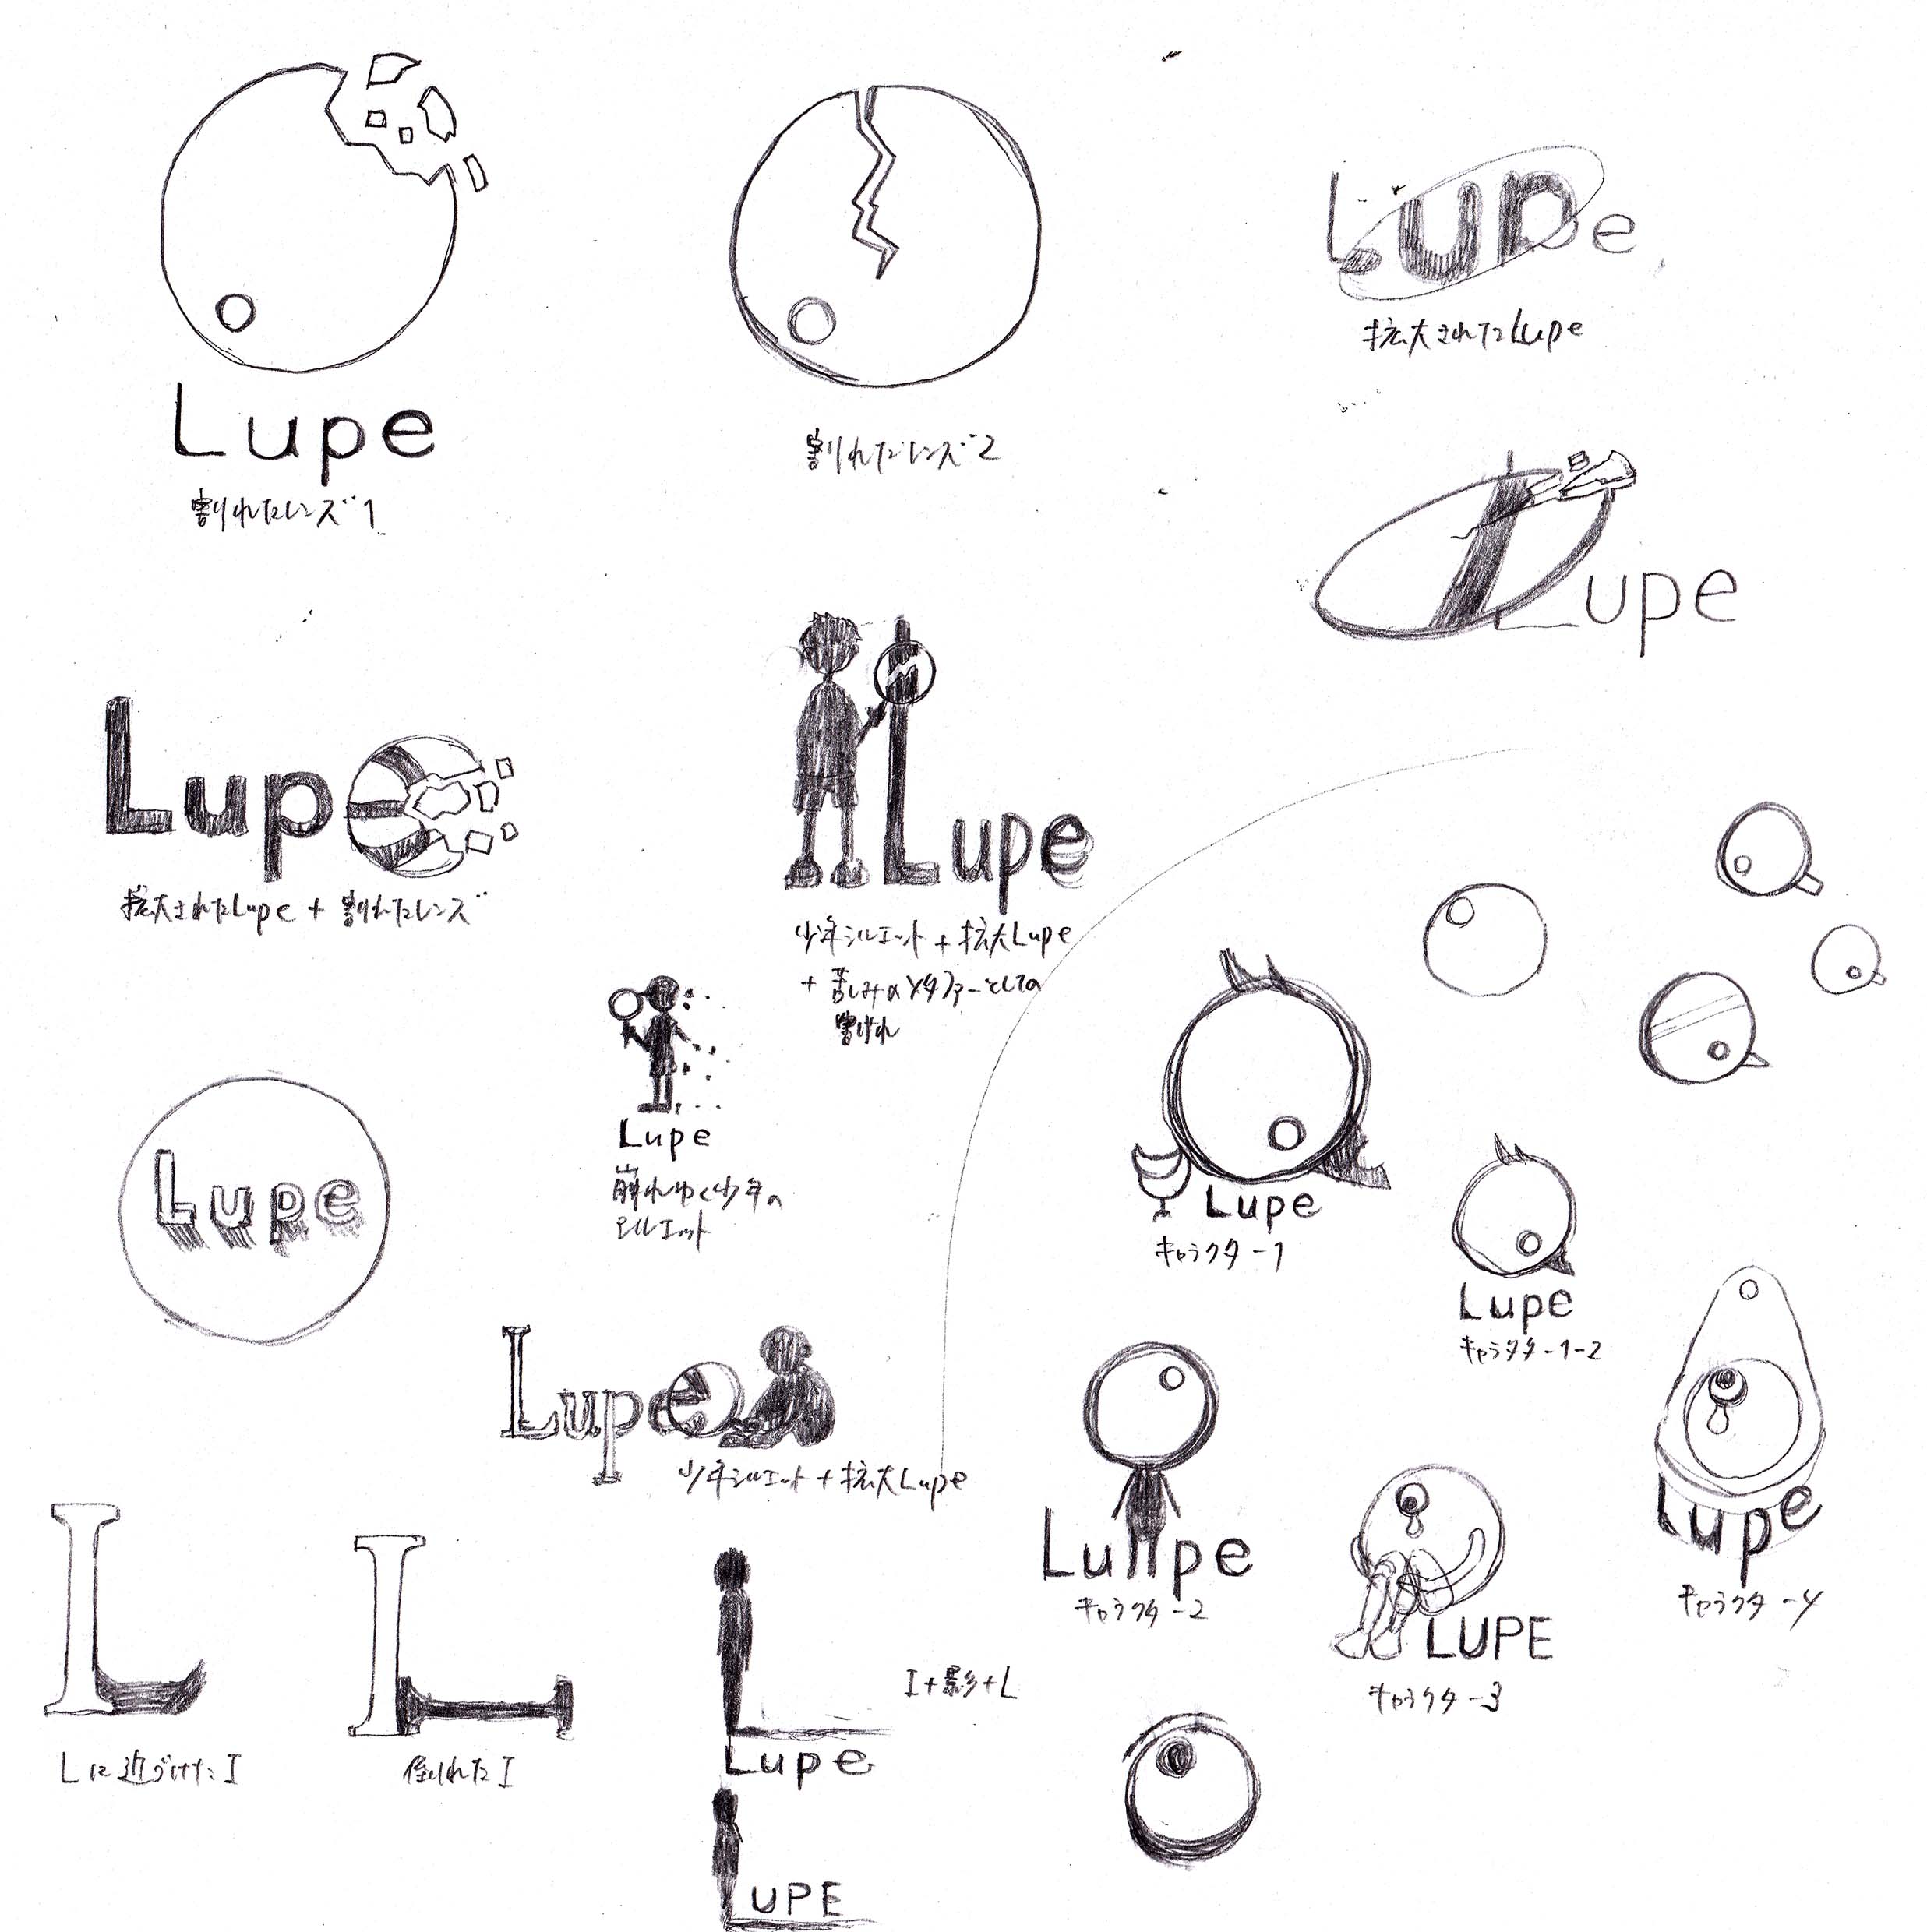 音楽バンド「Lupe」のロゴ、グッズデザイン②の作品画像